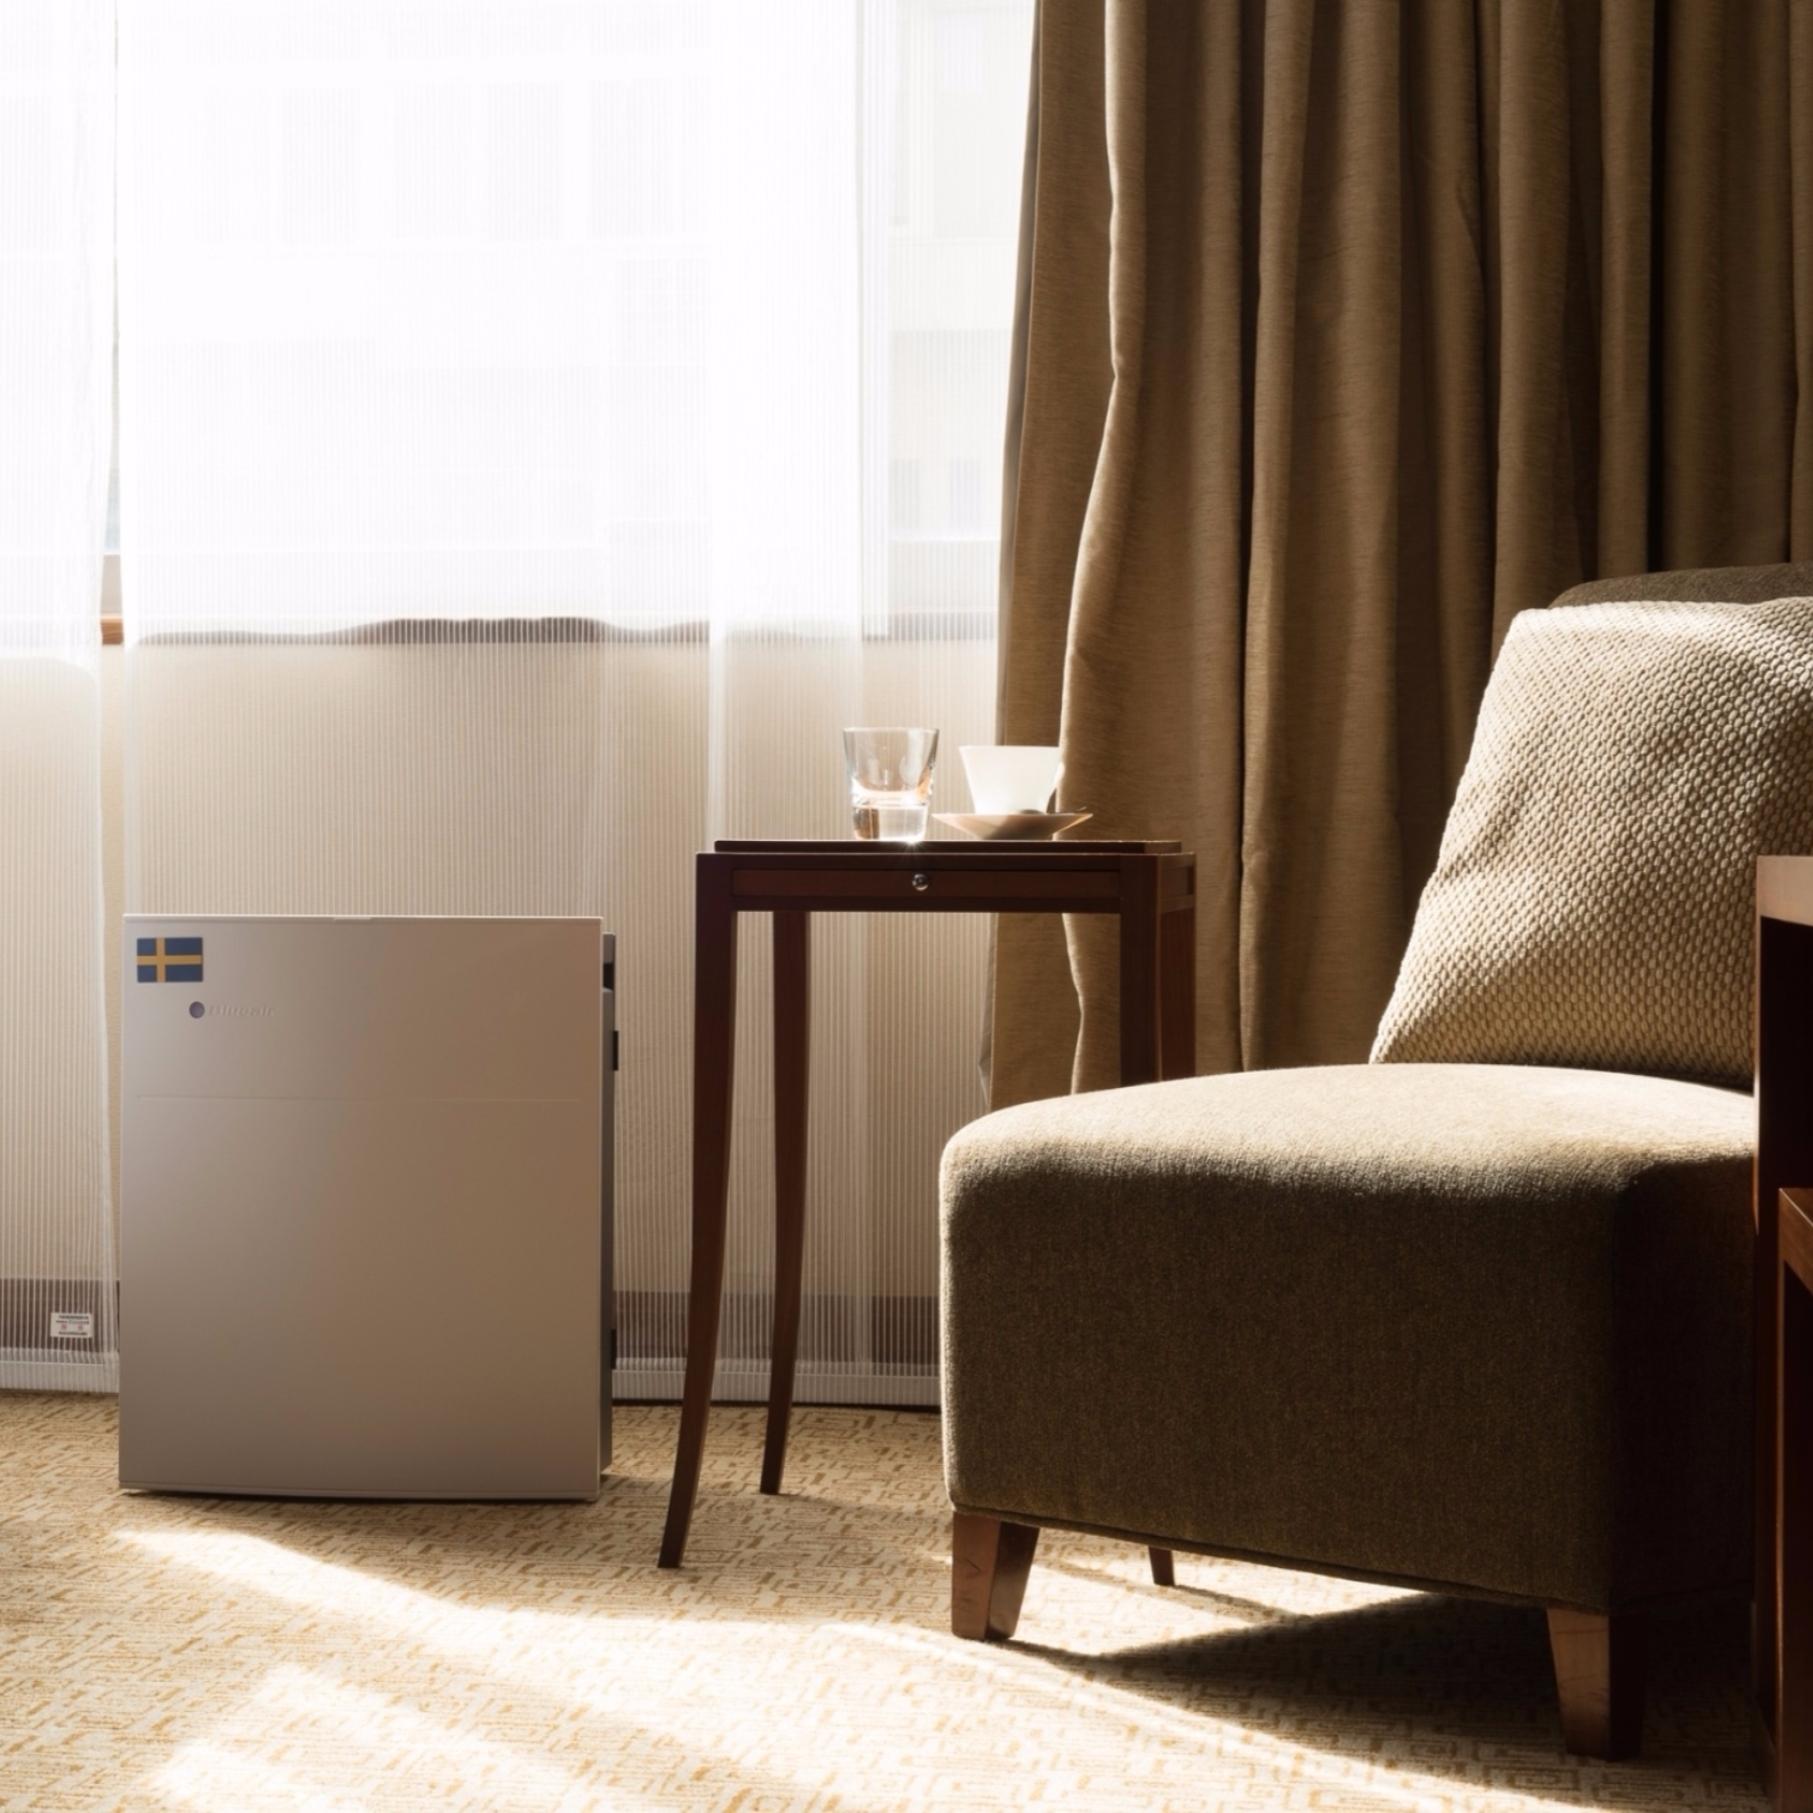 台北寒舍喜來登大飯店聯手瑞典智能空氣清淨機 Blueair 提供五星級好空氣 